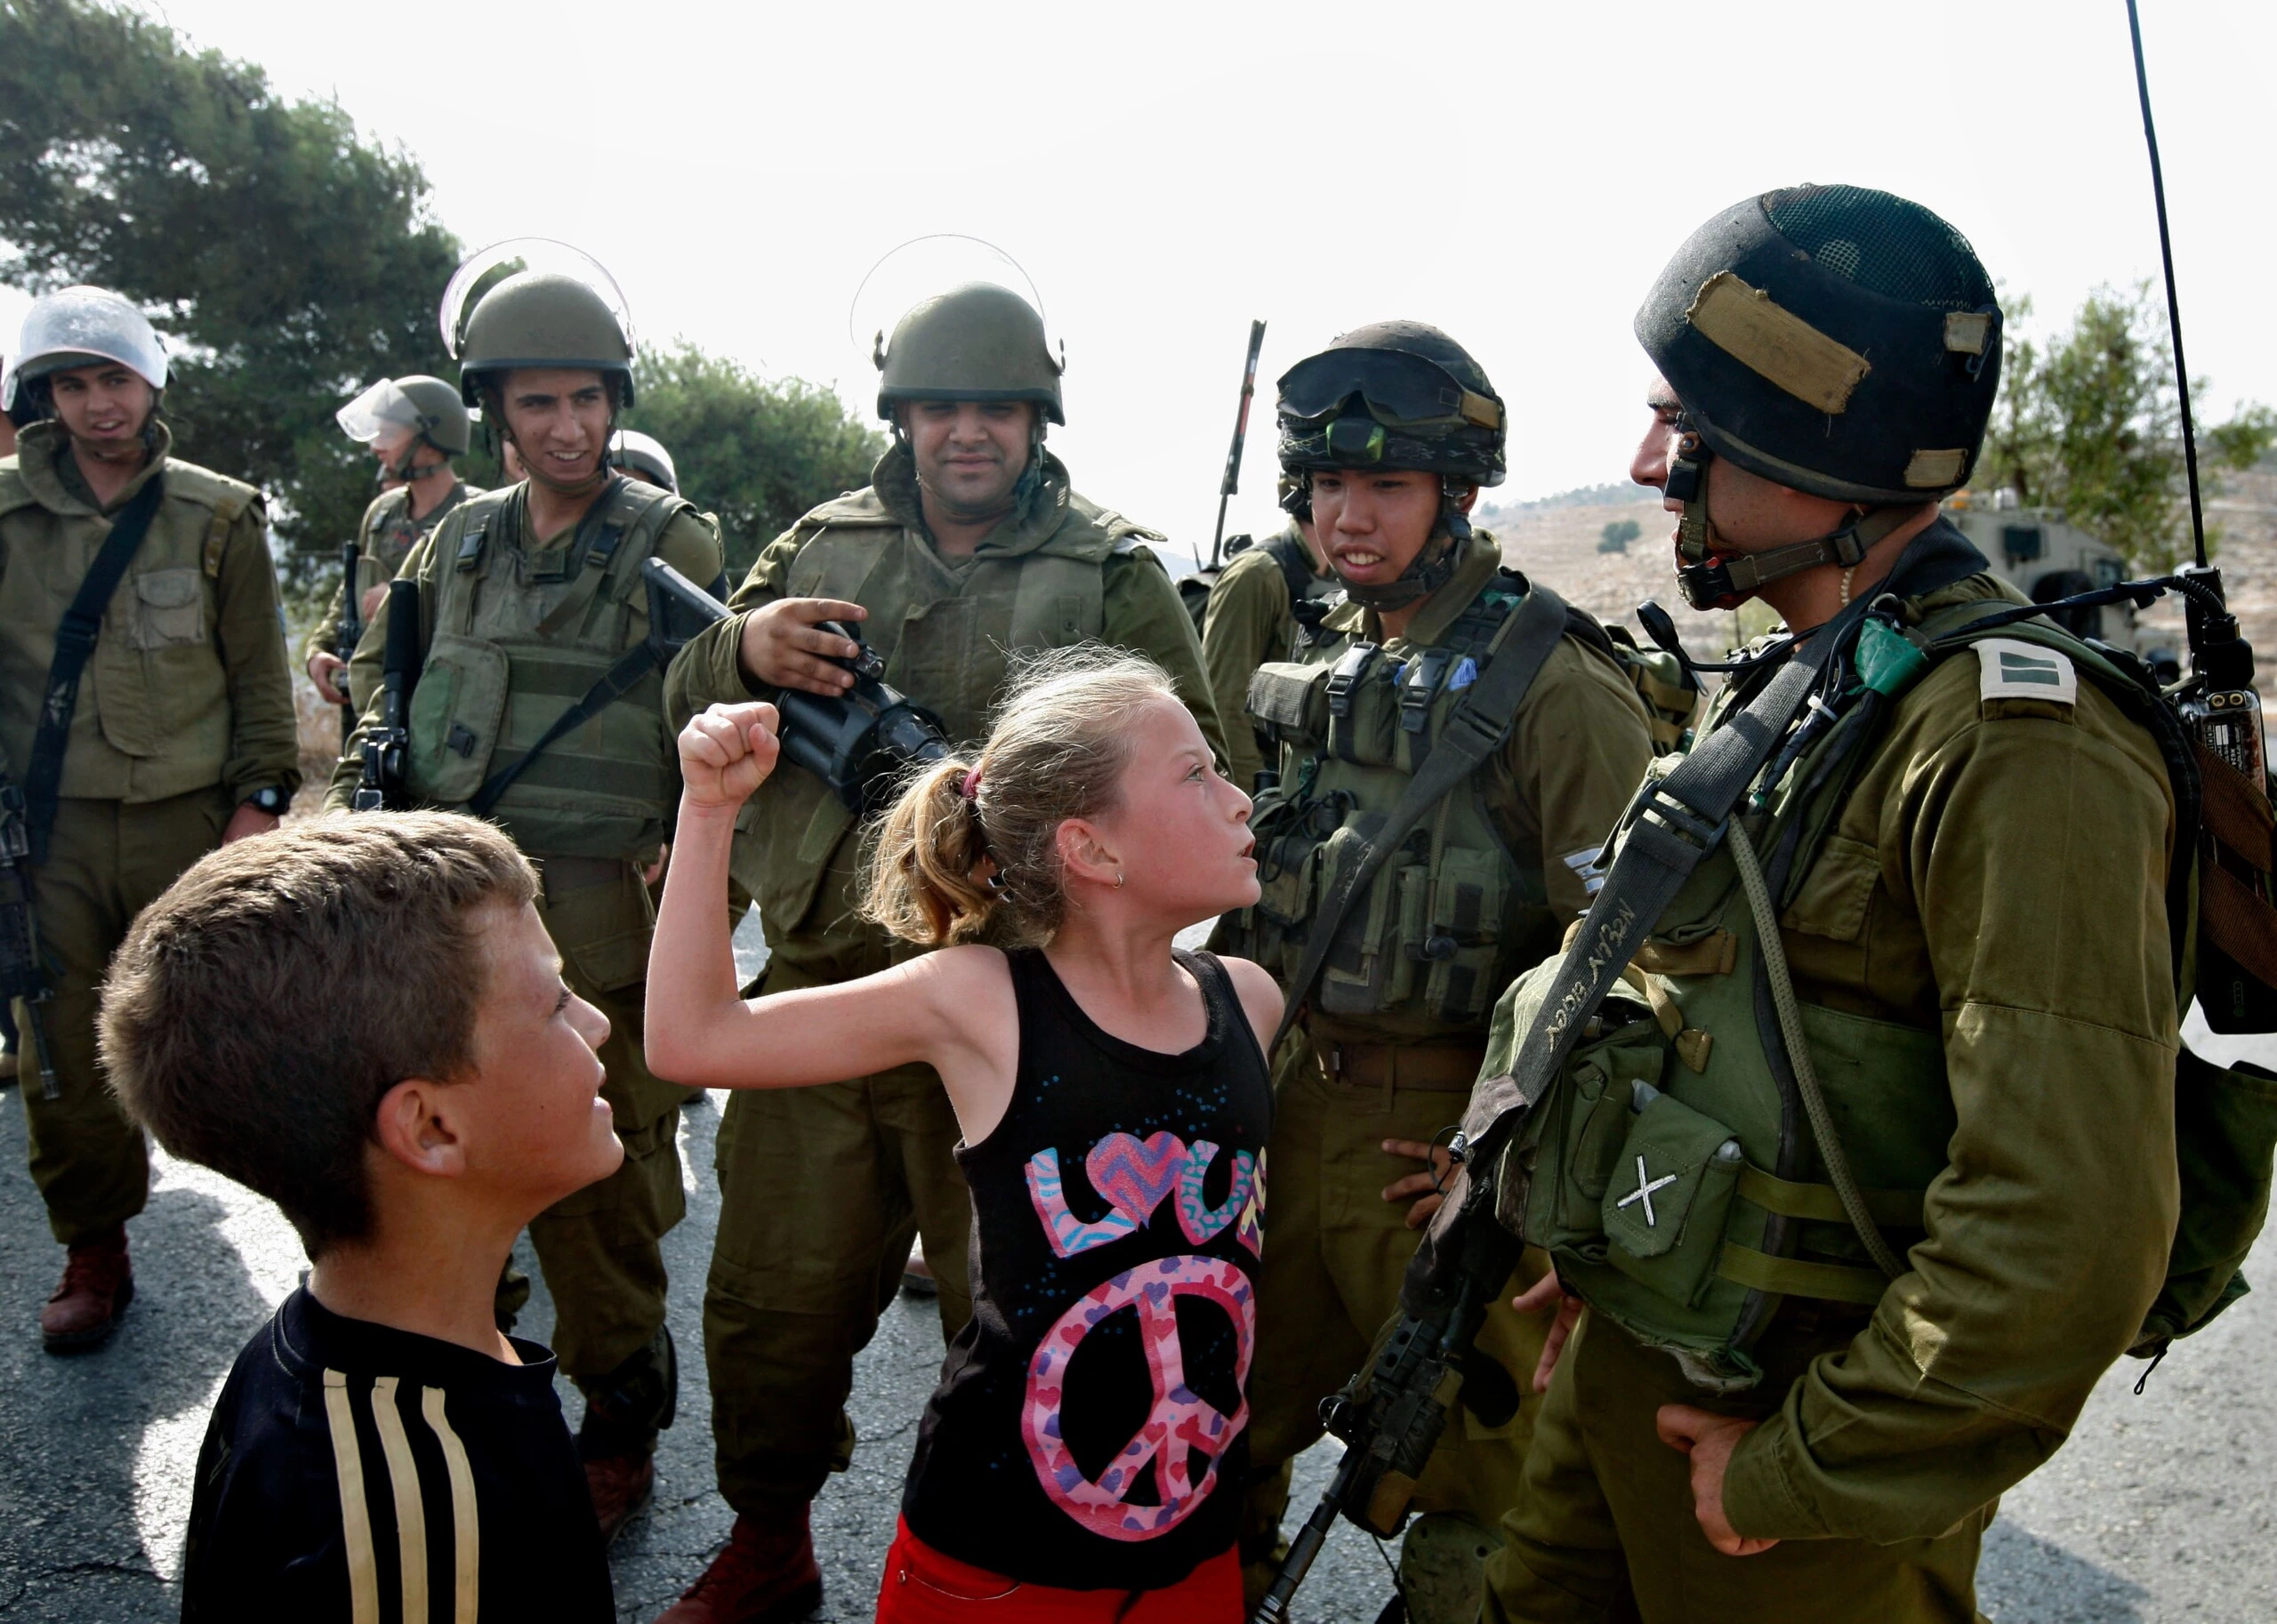 Em 2 de novembro de 2012, aos 11 anos, Ahed Tamimi tenta dar um soco em um soldado israelense durante um protesto em Nabi Saleh.